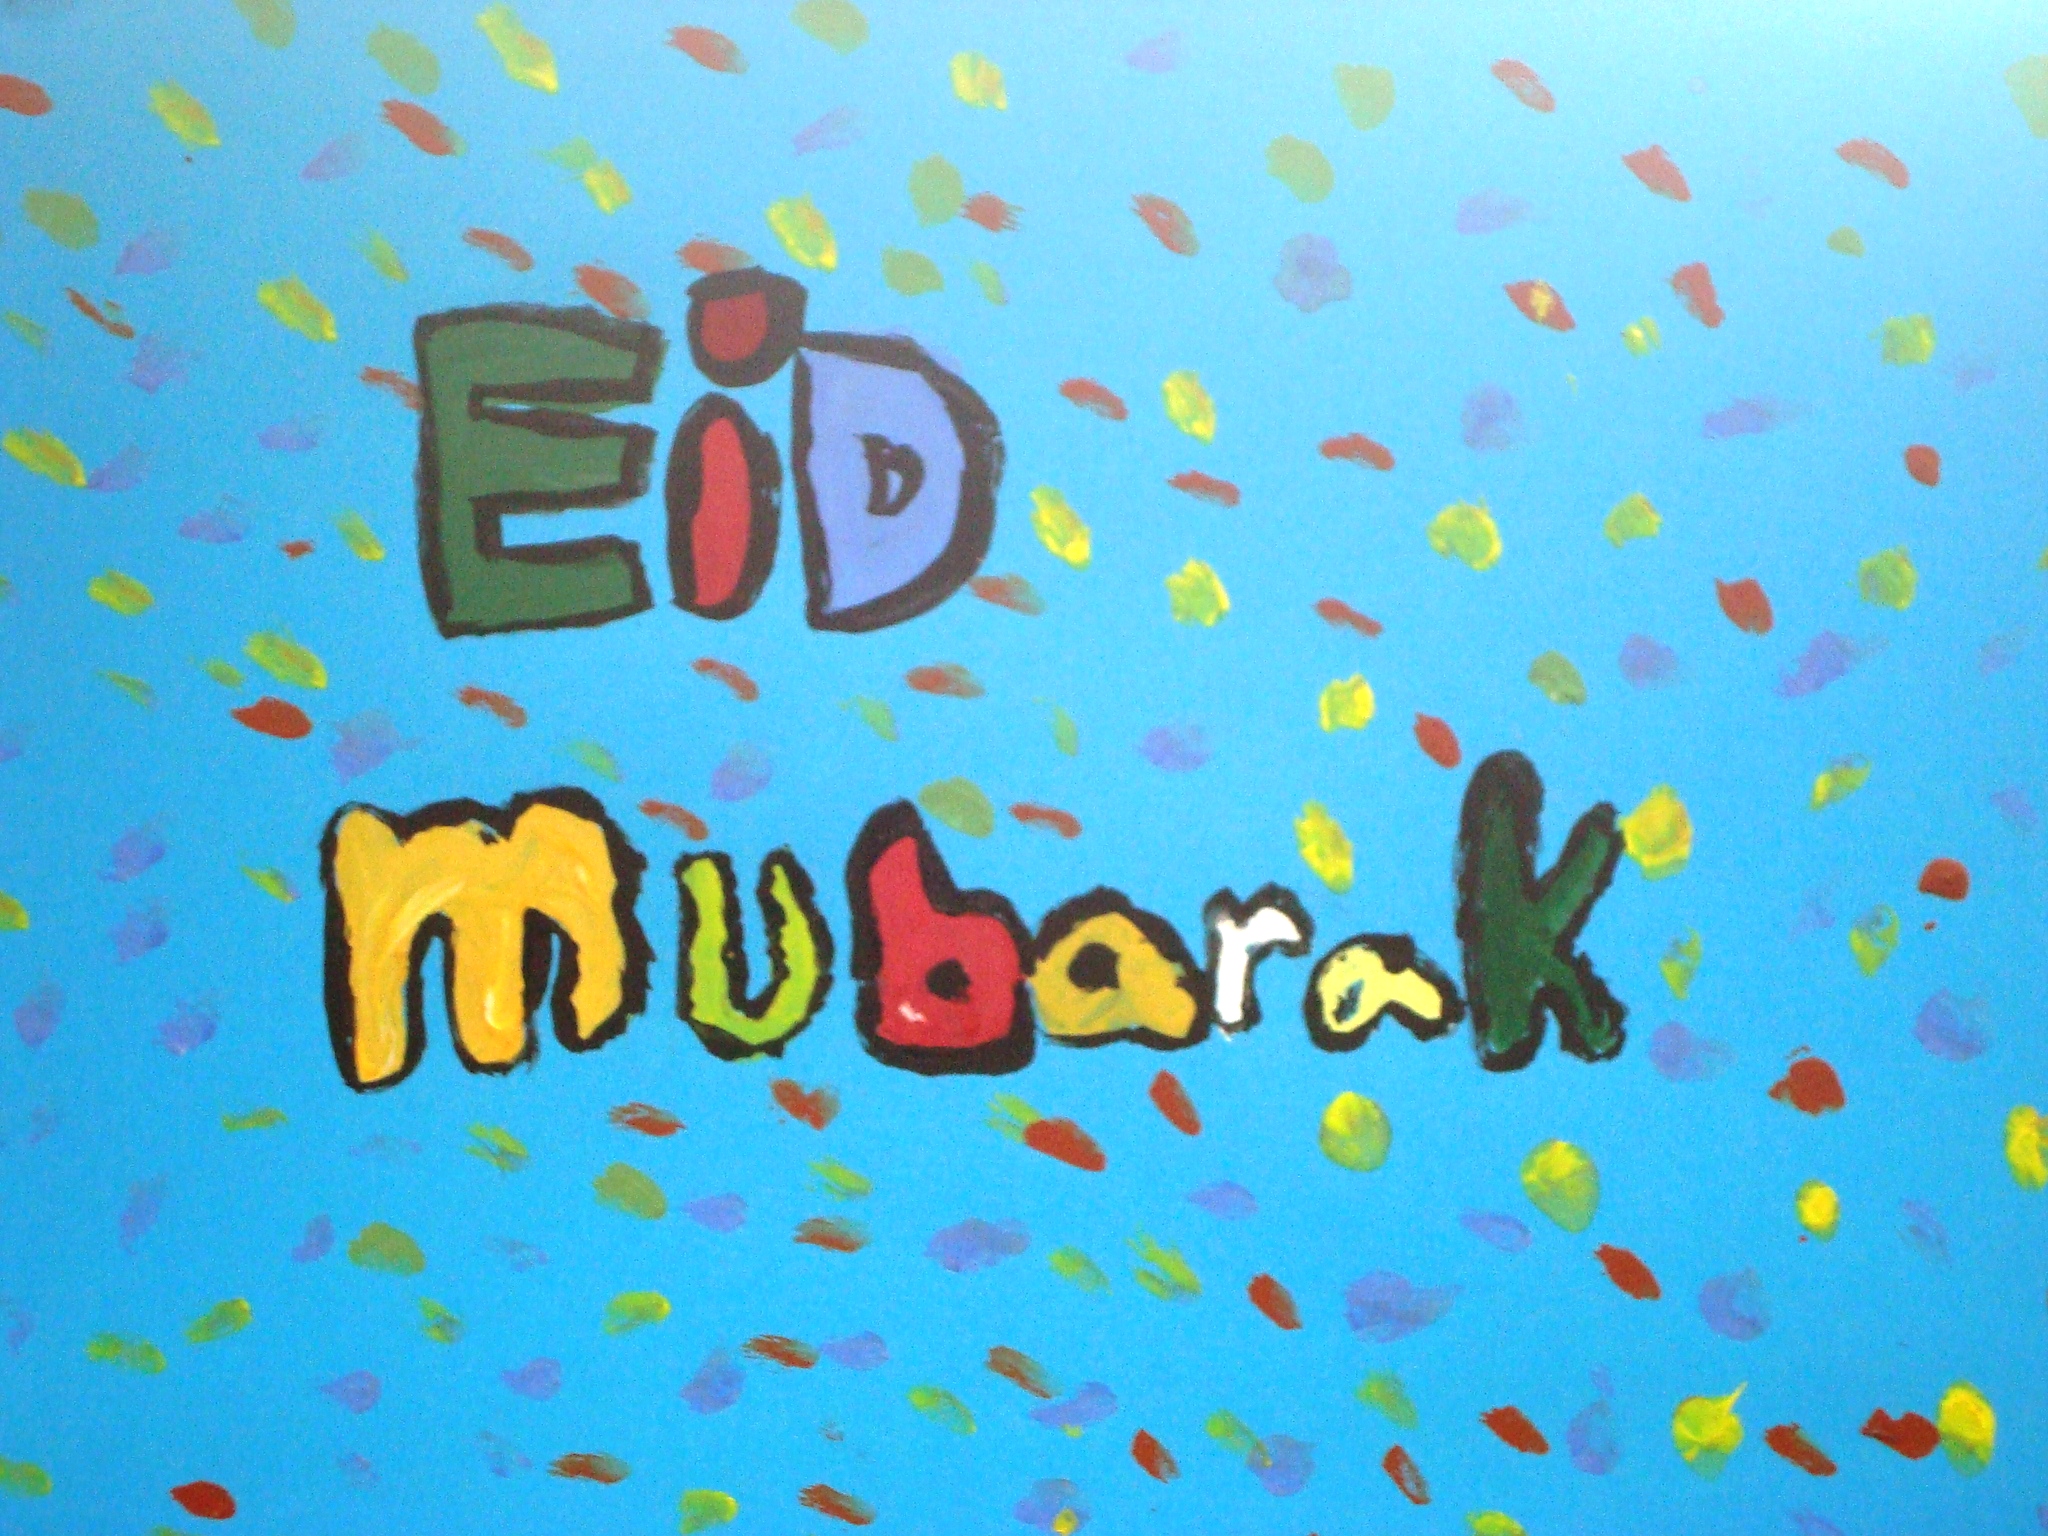 eid-mubarak.jpg